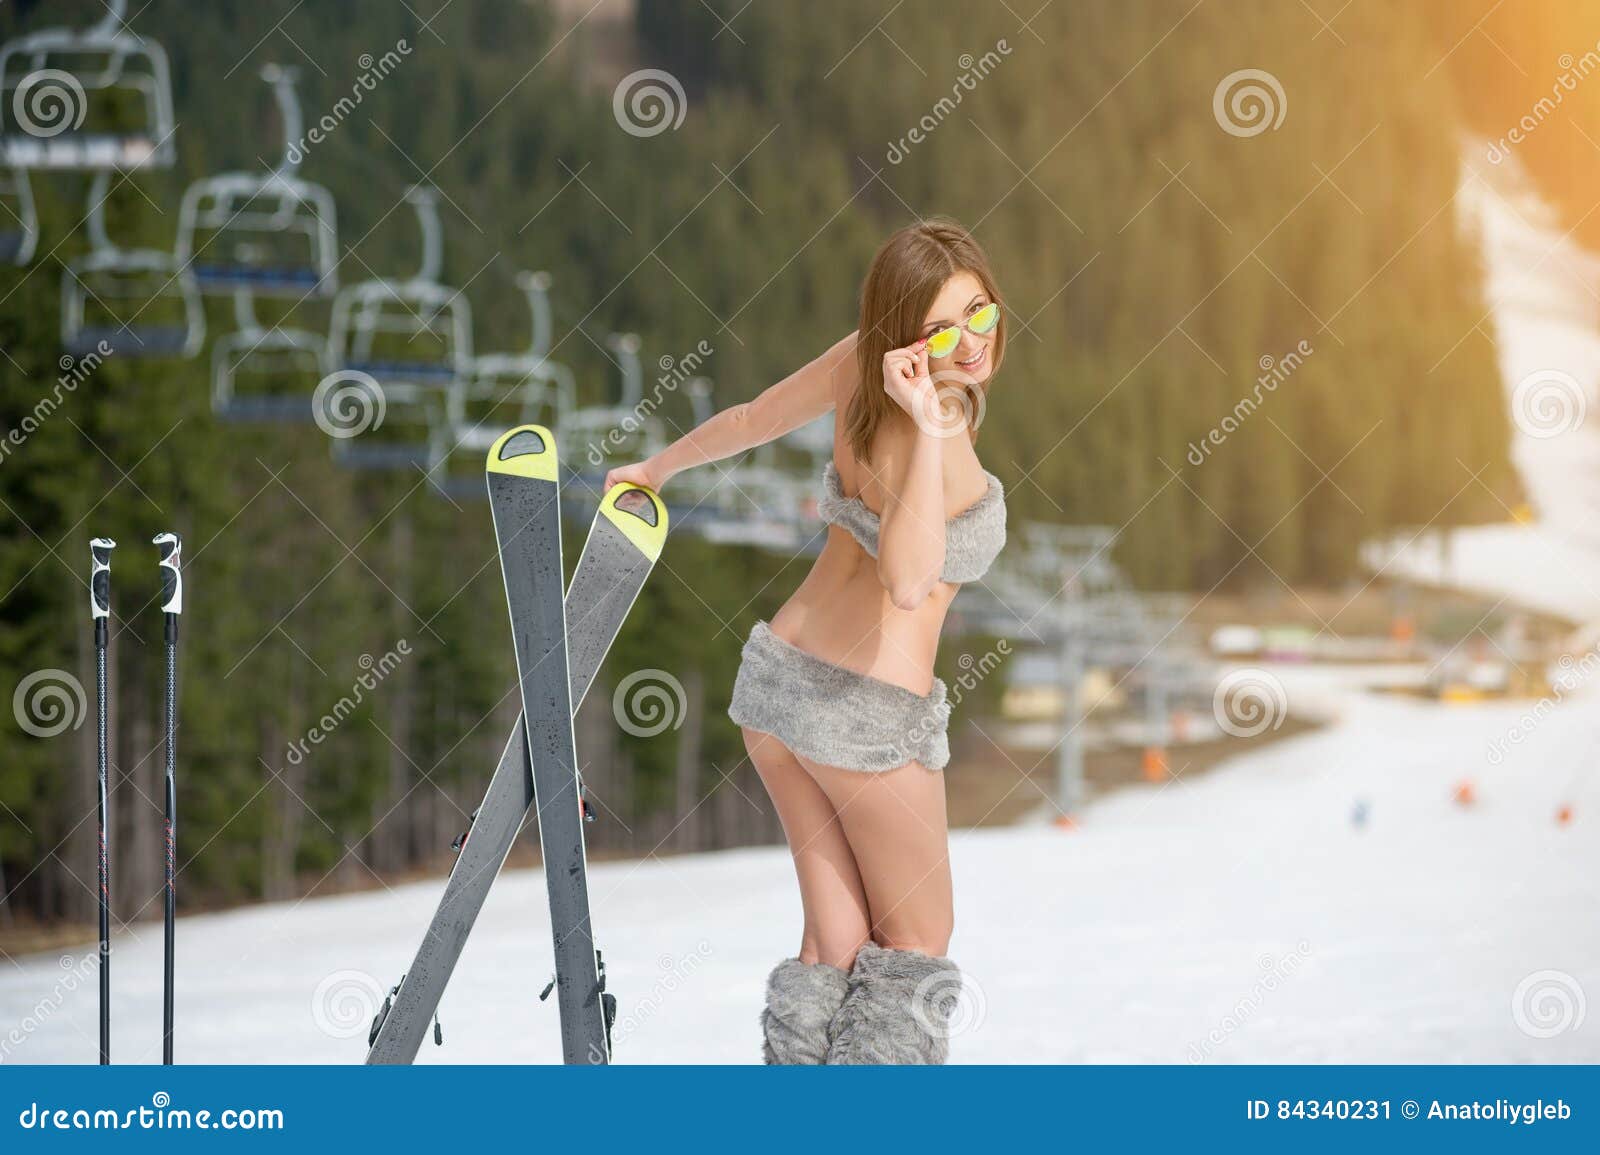 Skigirl Naked